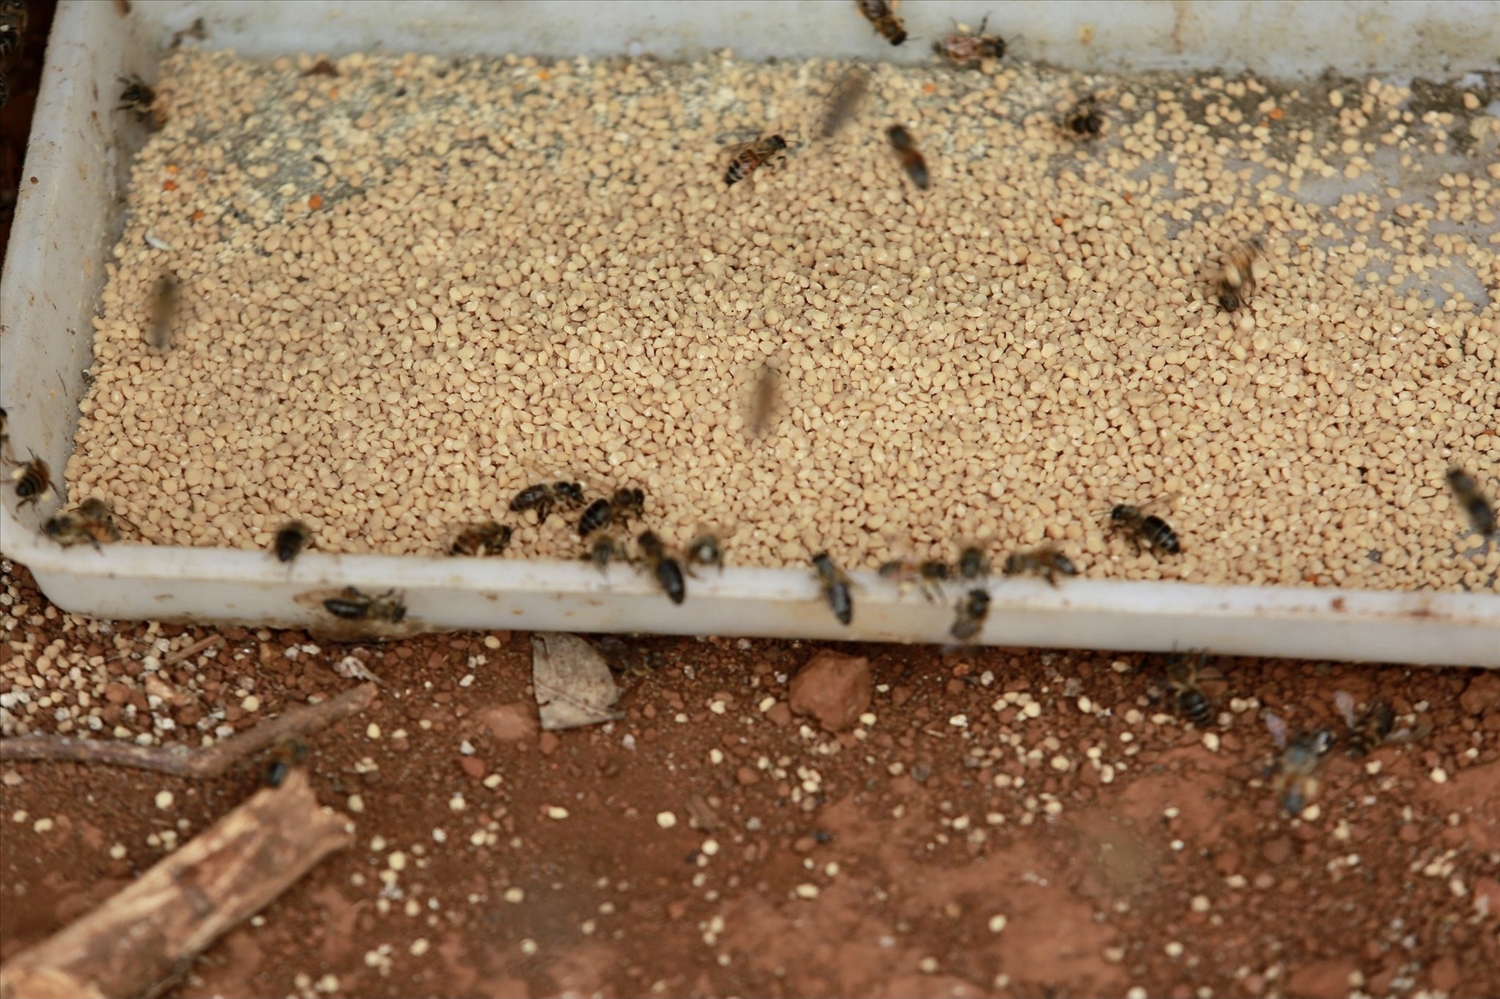 Ngoài mật ong, người nuôi ong còn thu được sản phẩm phấn hoa